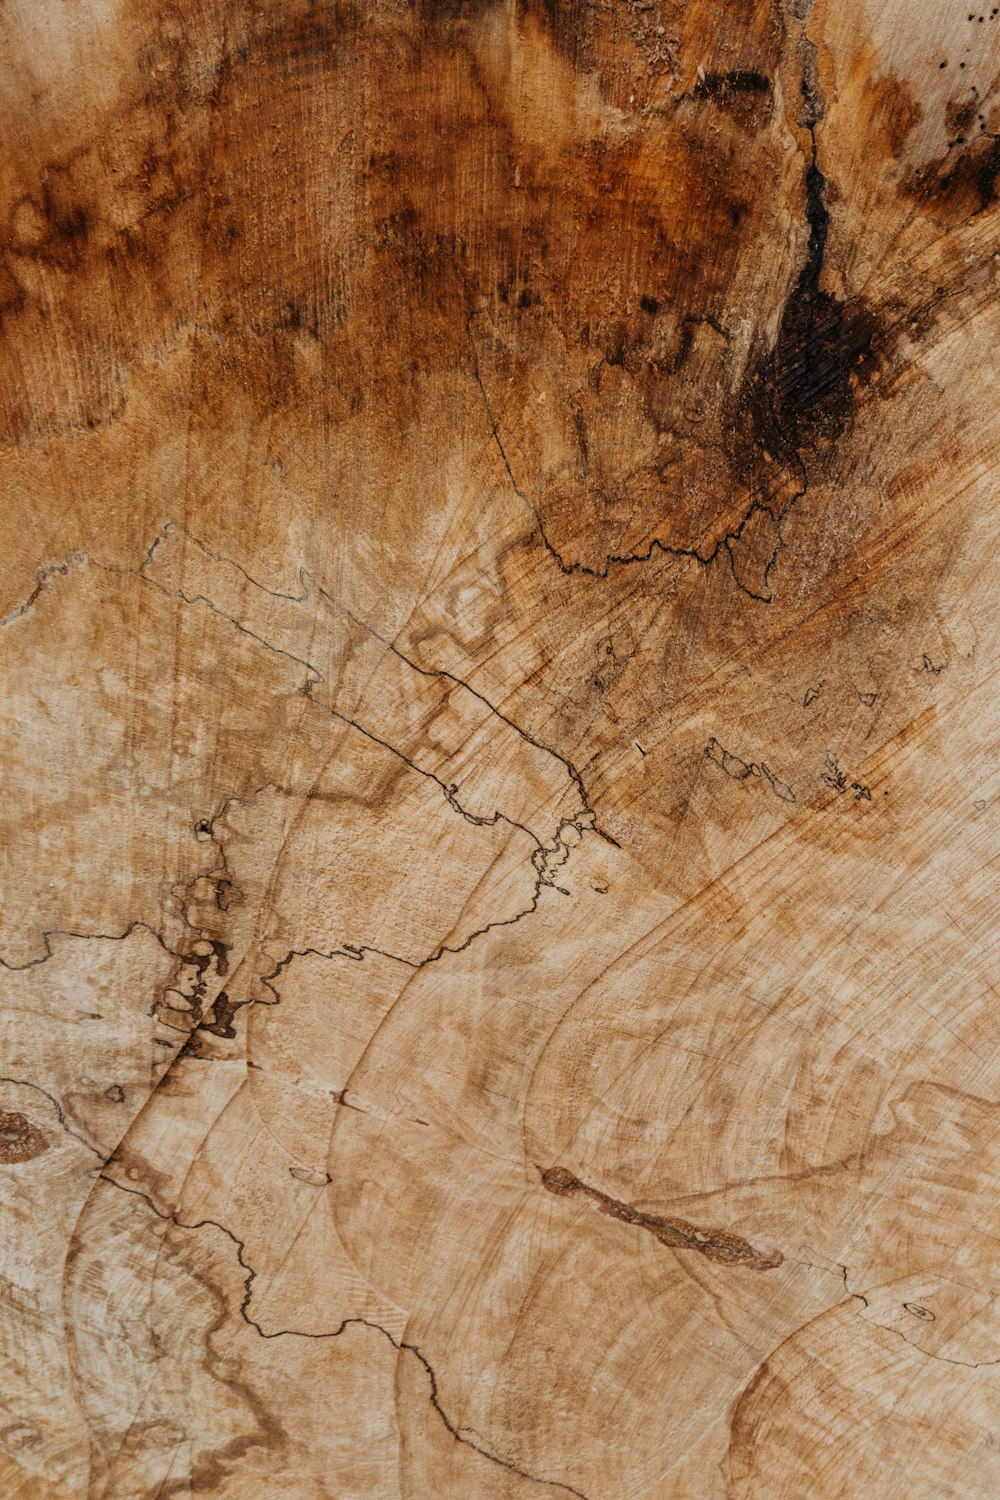 Quá trình tạo hình nền gỗ là một nghệ thuật tinh tế đòi hỏi công phu và tài năng của những người thợ thủ công. Hình nền gỗ sẽ mang lại vẻ đẹp tự nhiên, ấm cúng và tạo cảm giác đặc biệt cho màn hình của bạn. Hãy cùng khám phá những hình nền gỗ đẹp và độc đáo nhất để làm mới không gian làm việc của bạn.